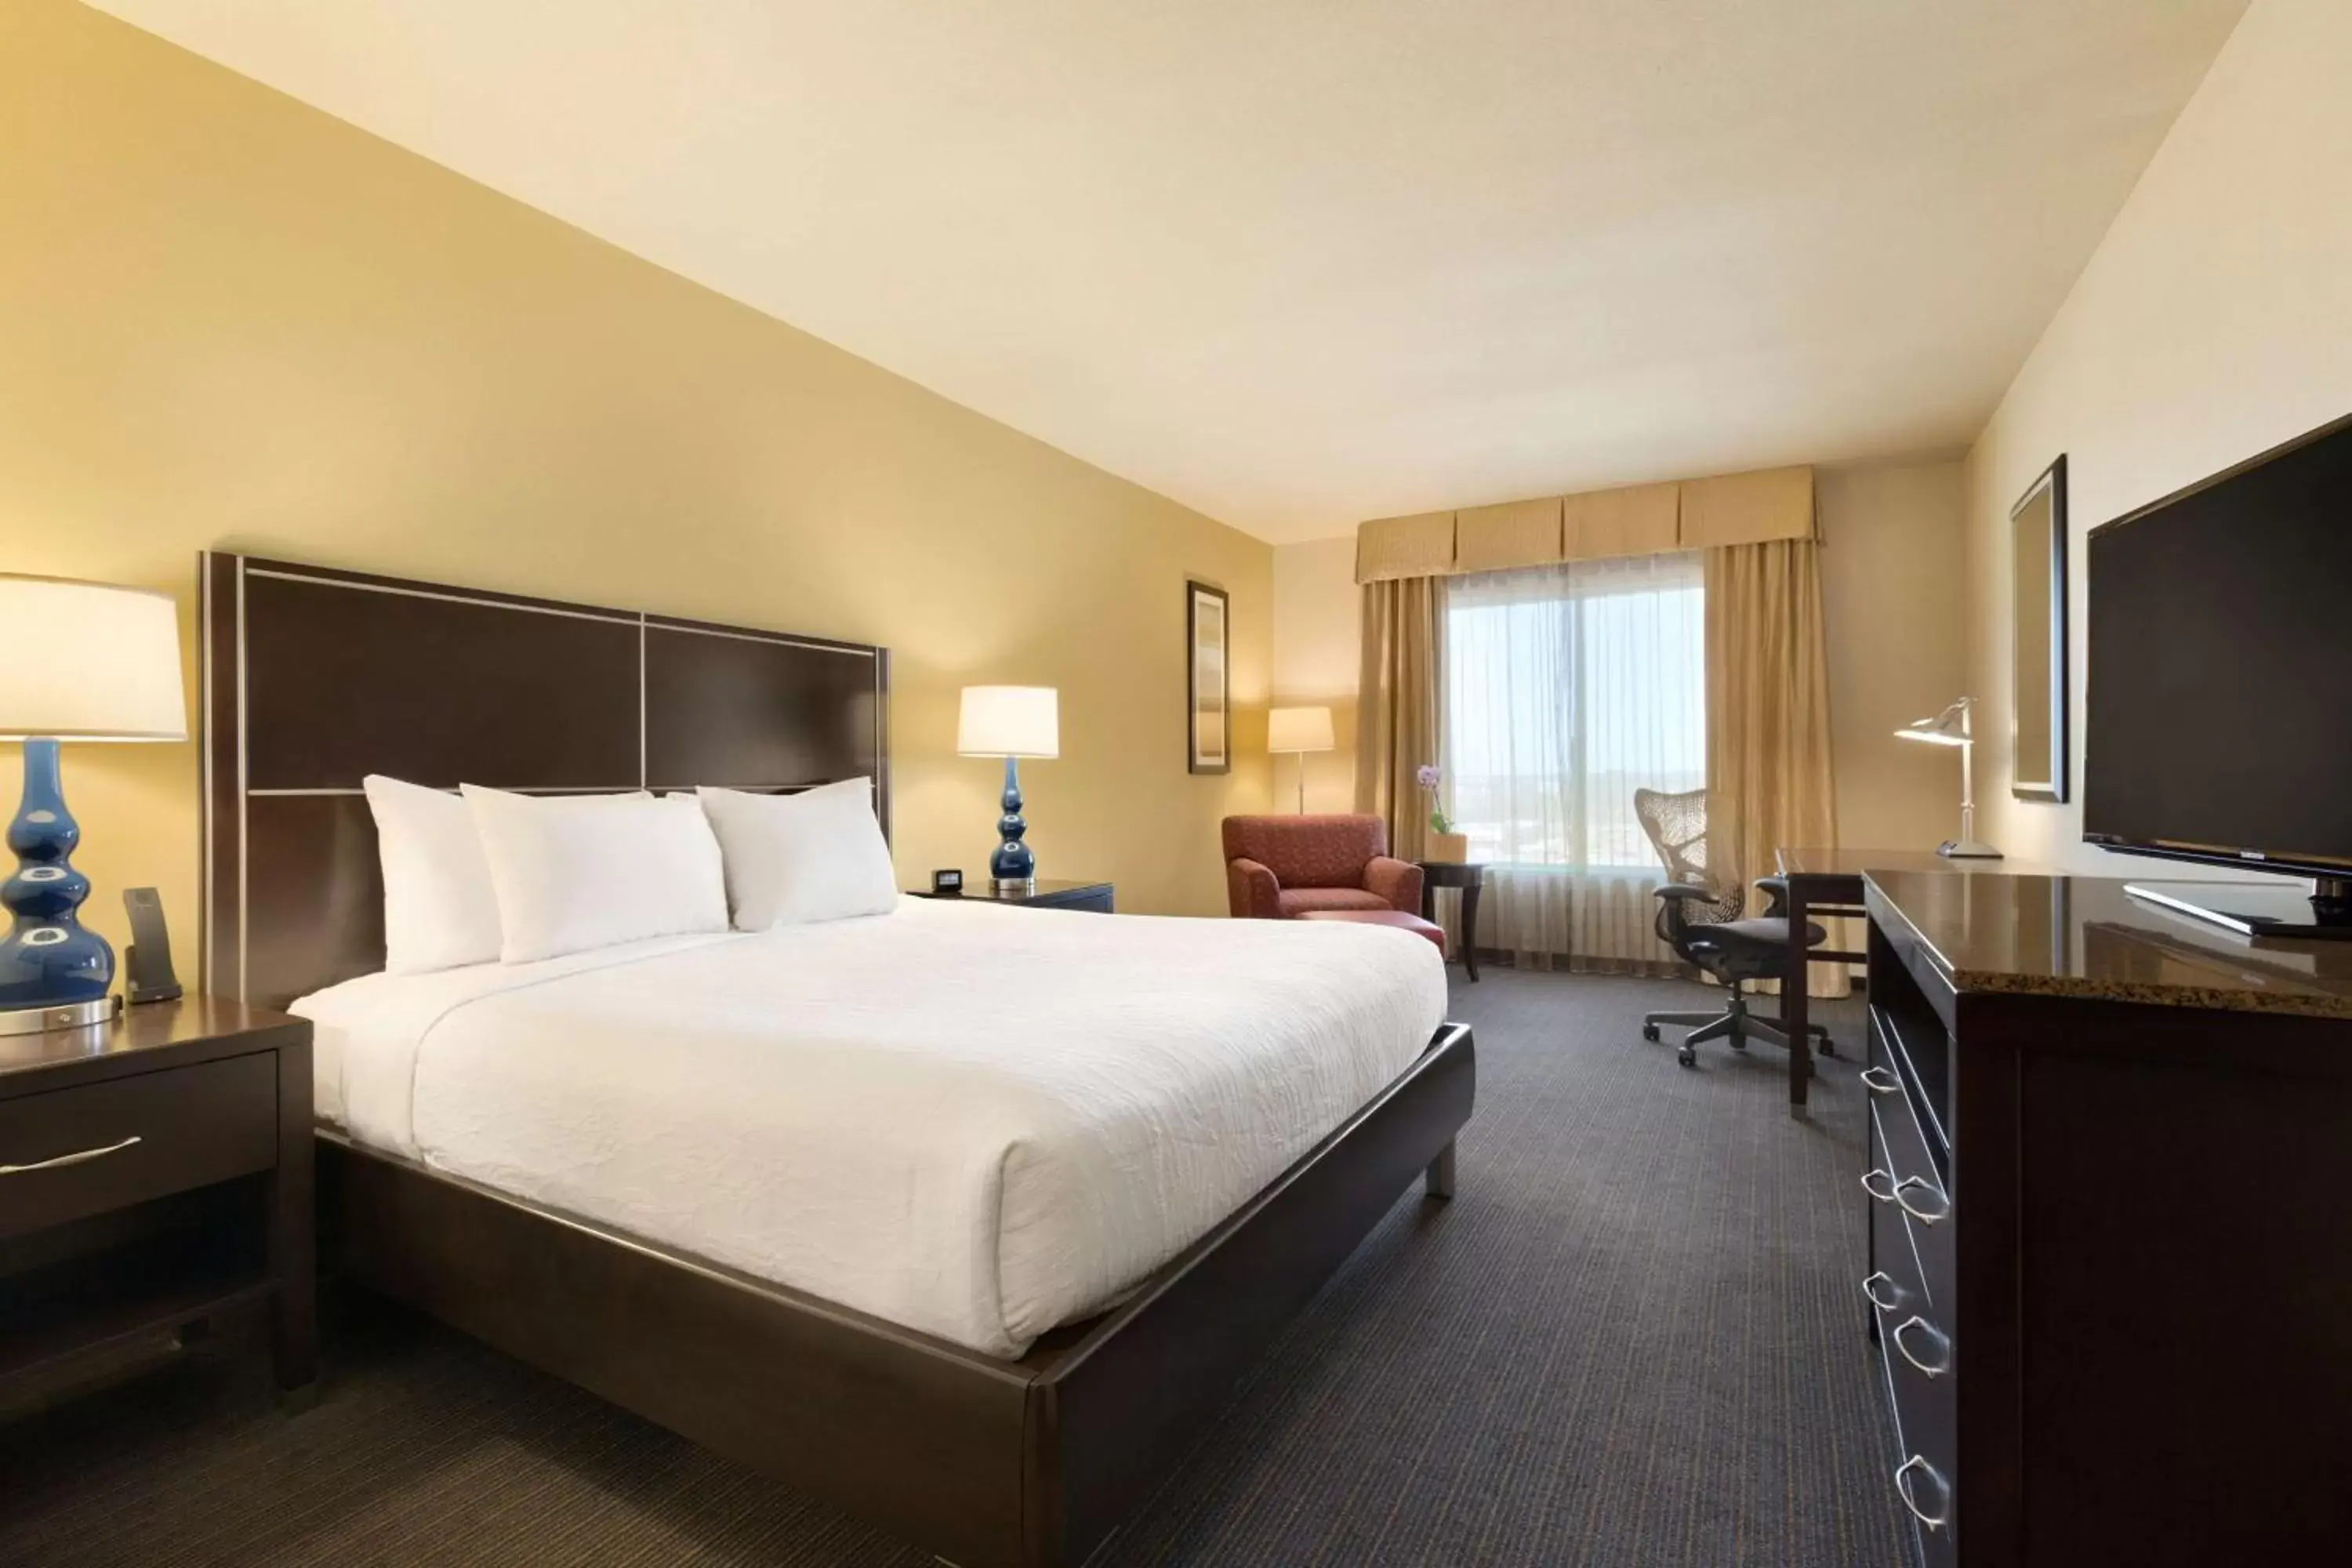 Bedroom in Hilton Garden Inn Houston NW America Plaza